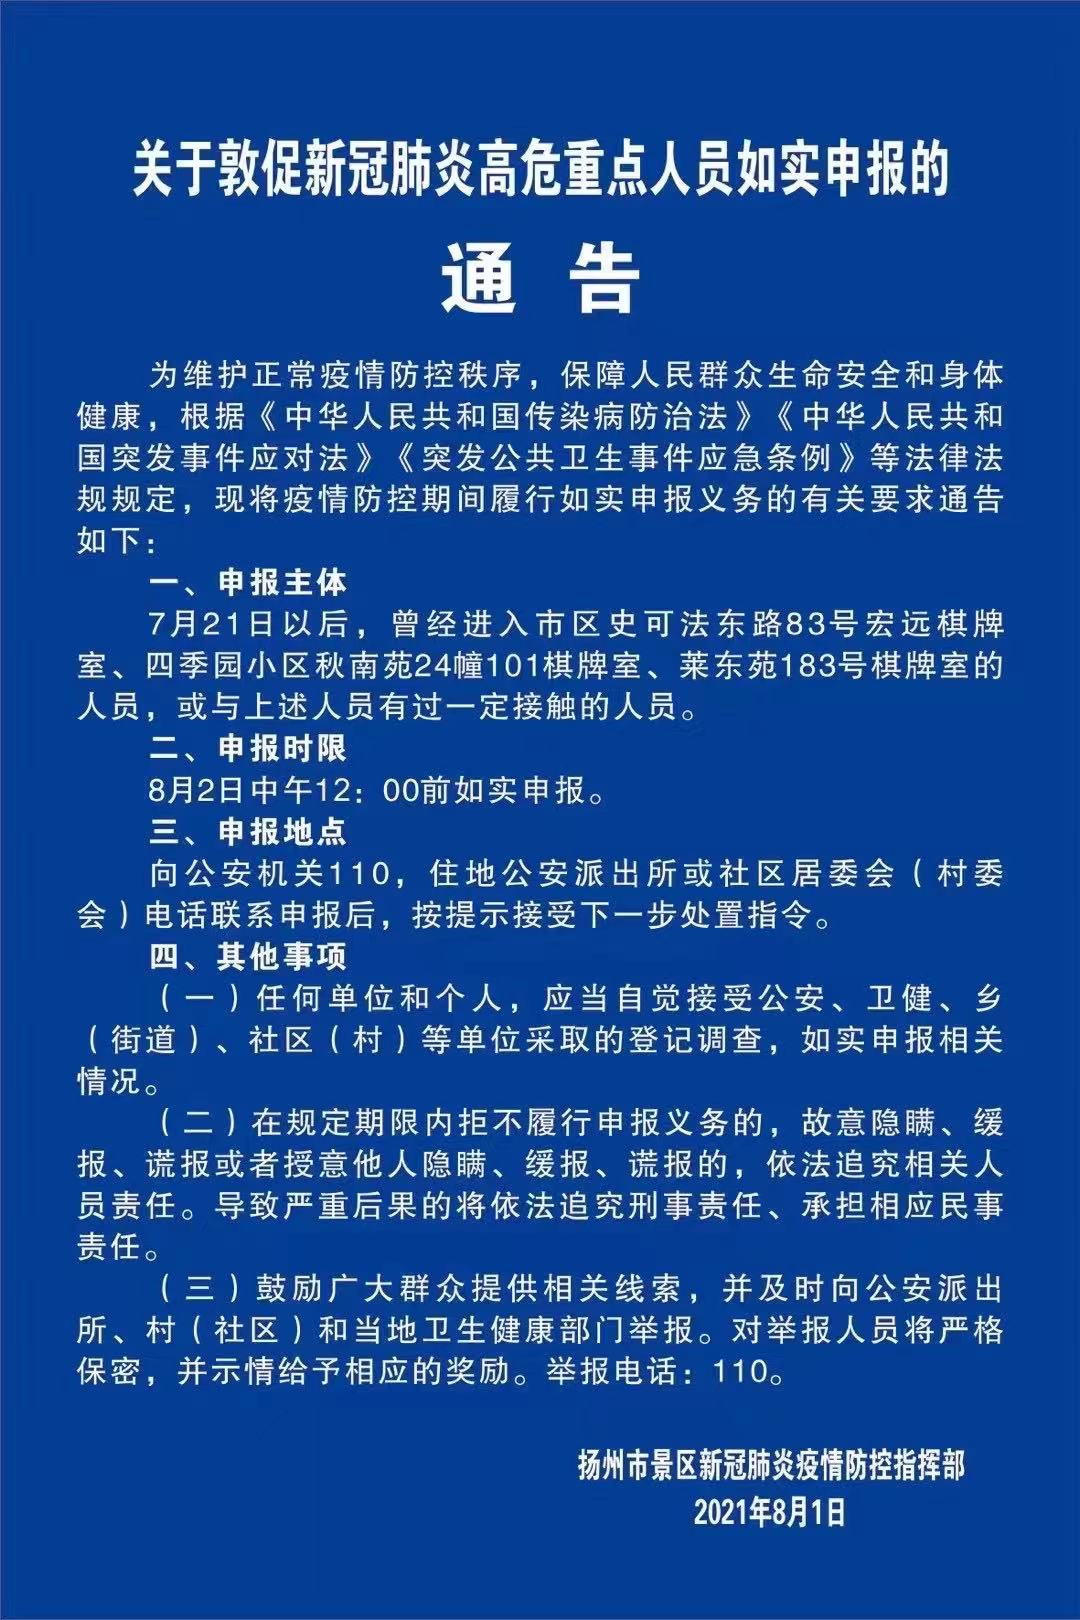 扬州景区要求涉疫棋牌室人员如实申报相关情况。 图片来自@扬州发布